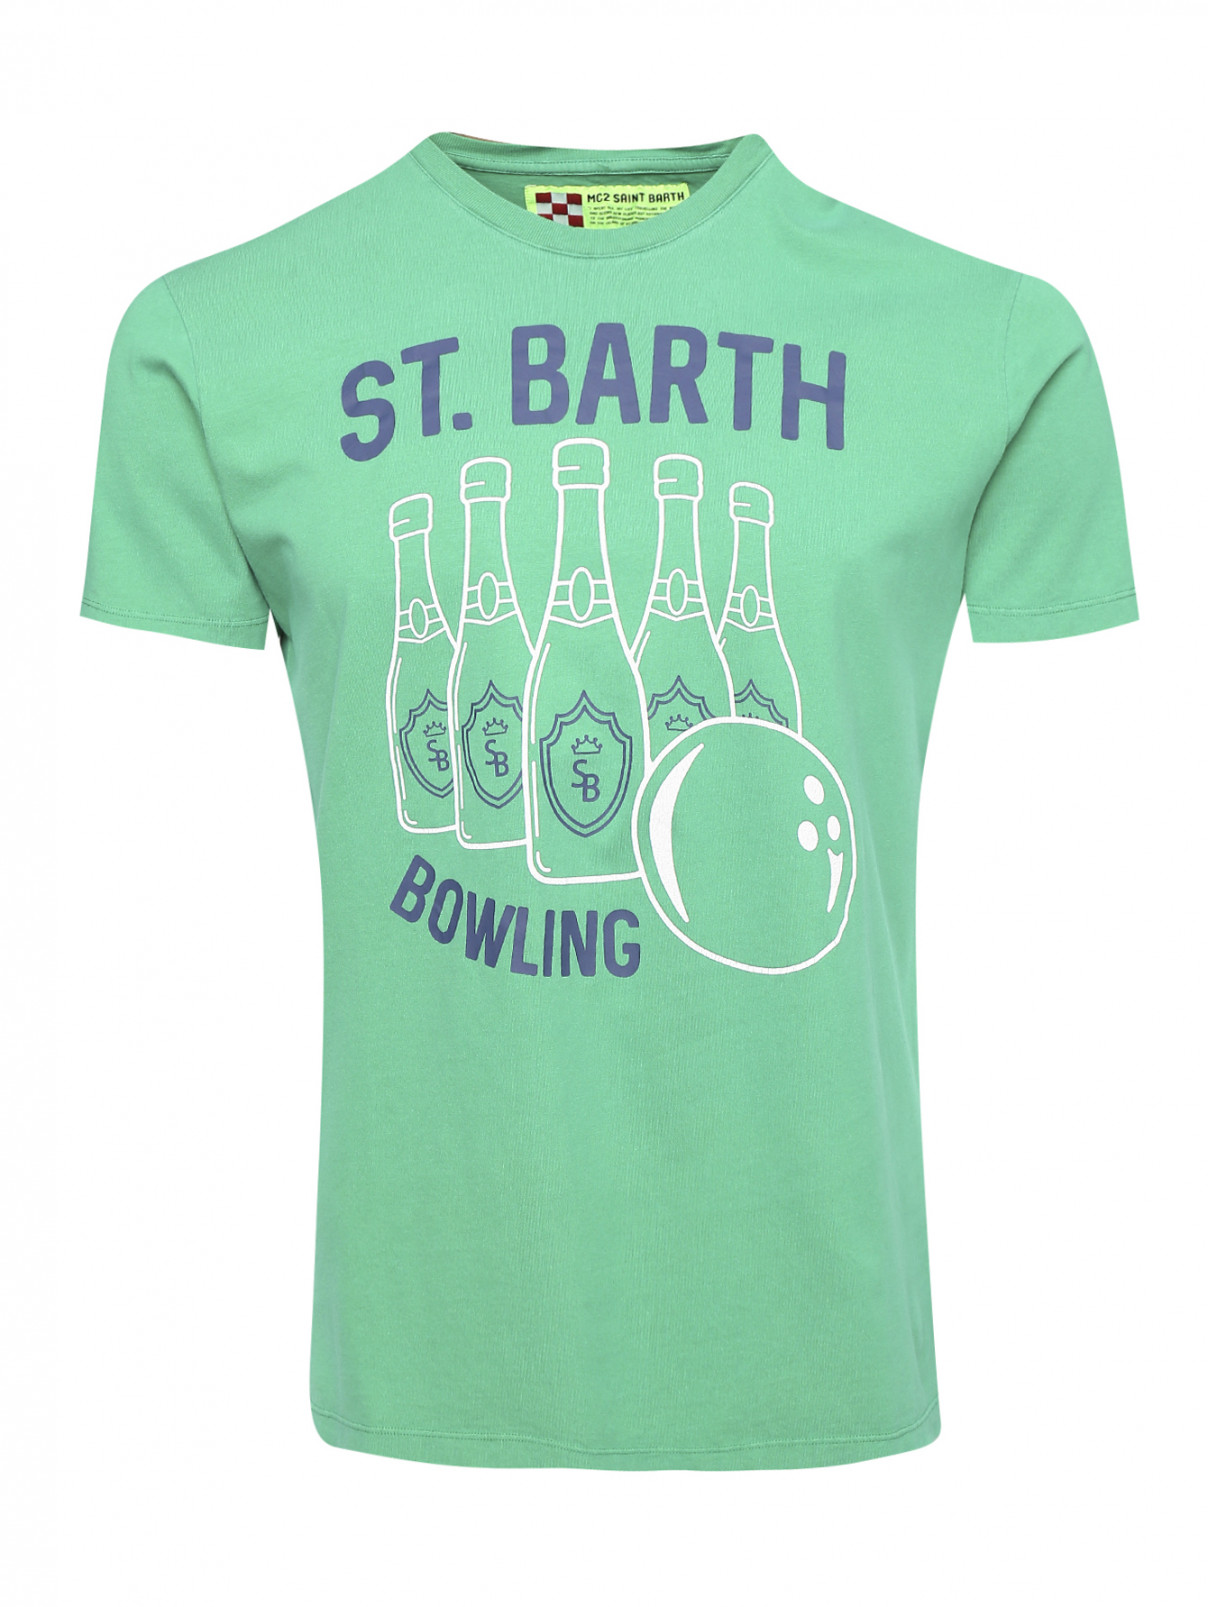 Футболка из хлопка с принтом Mc2 Saint Barth  –  Общий вид  – Цвет:  Зеленый